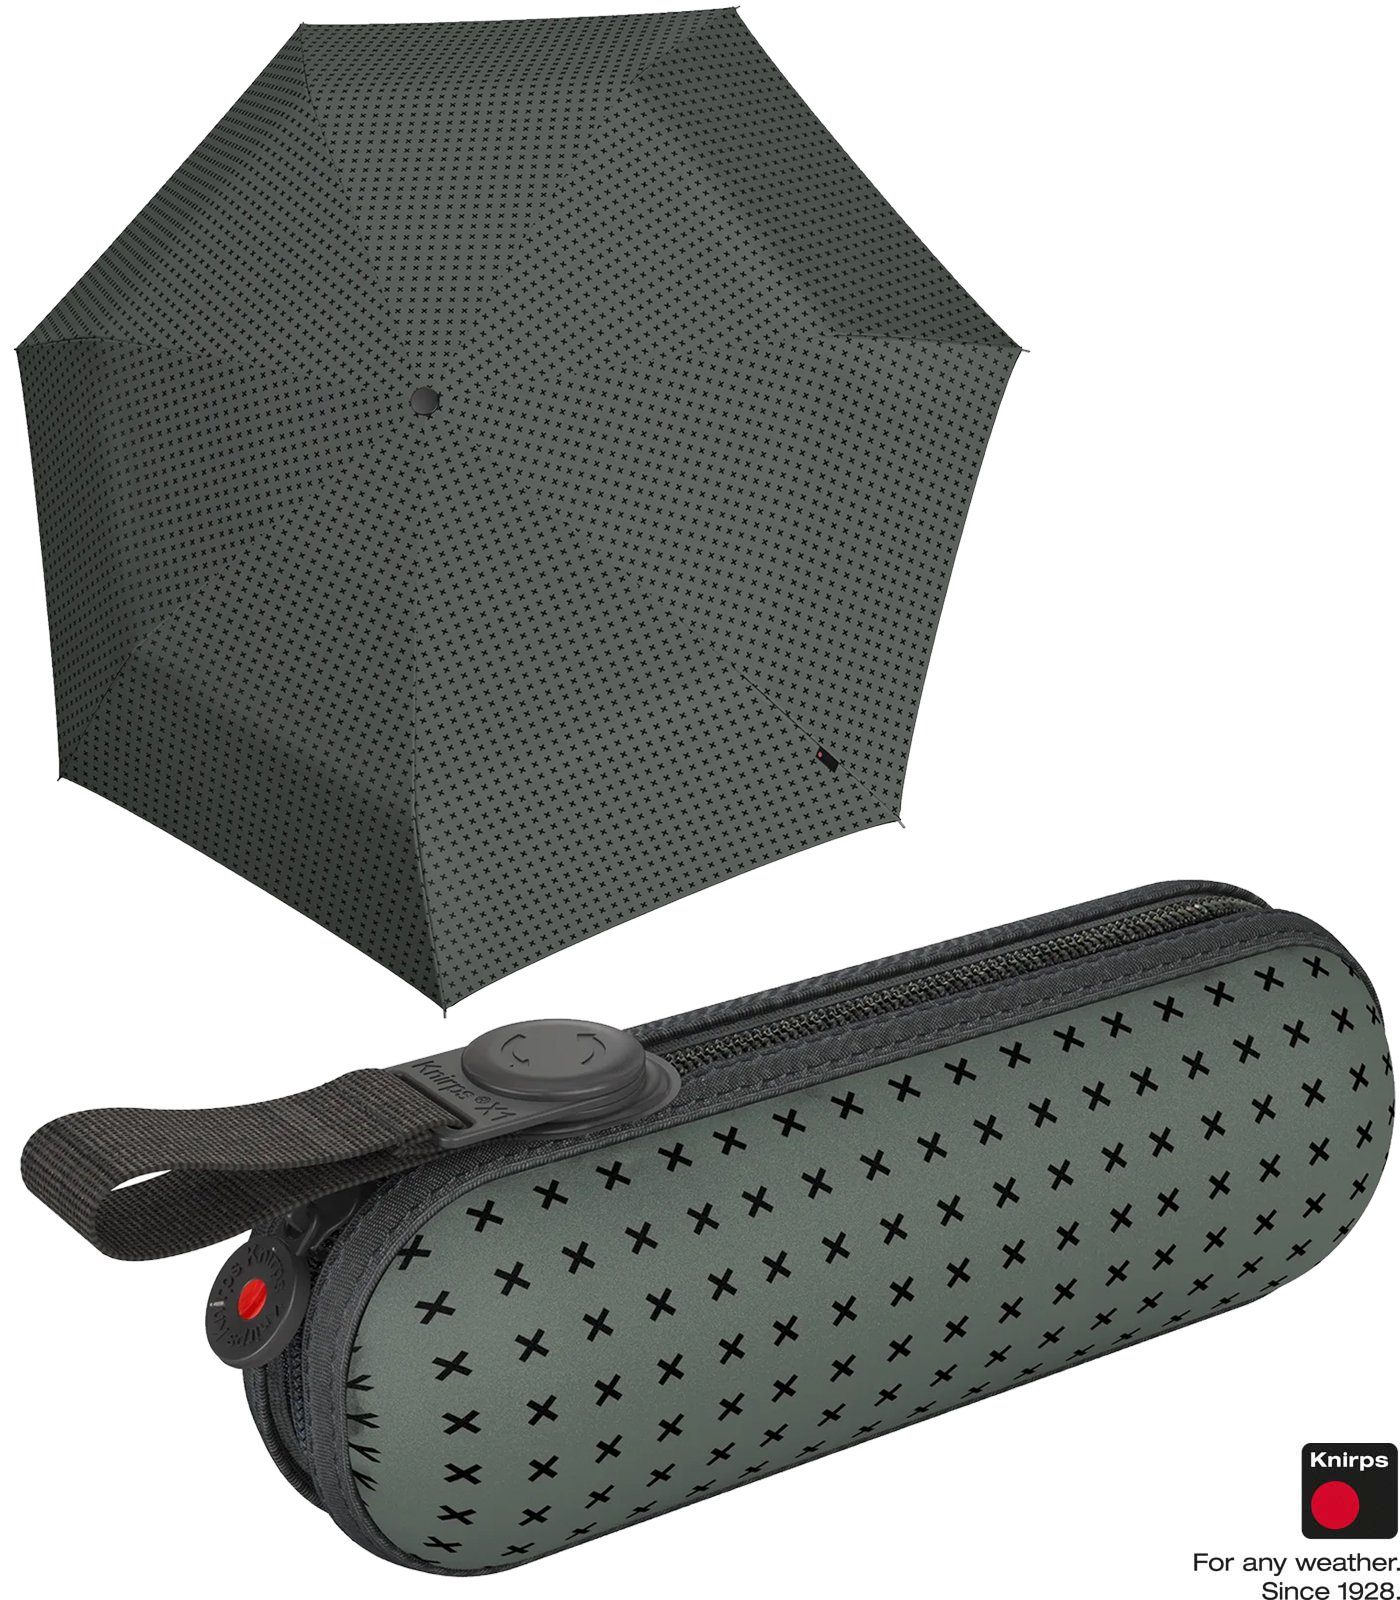 Knirps® Taschenregenschirm X1 Super Mini mit ecorepel-Technologie - 2Cross, der kleine, leichte, kompakte Begleiter grau